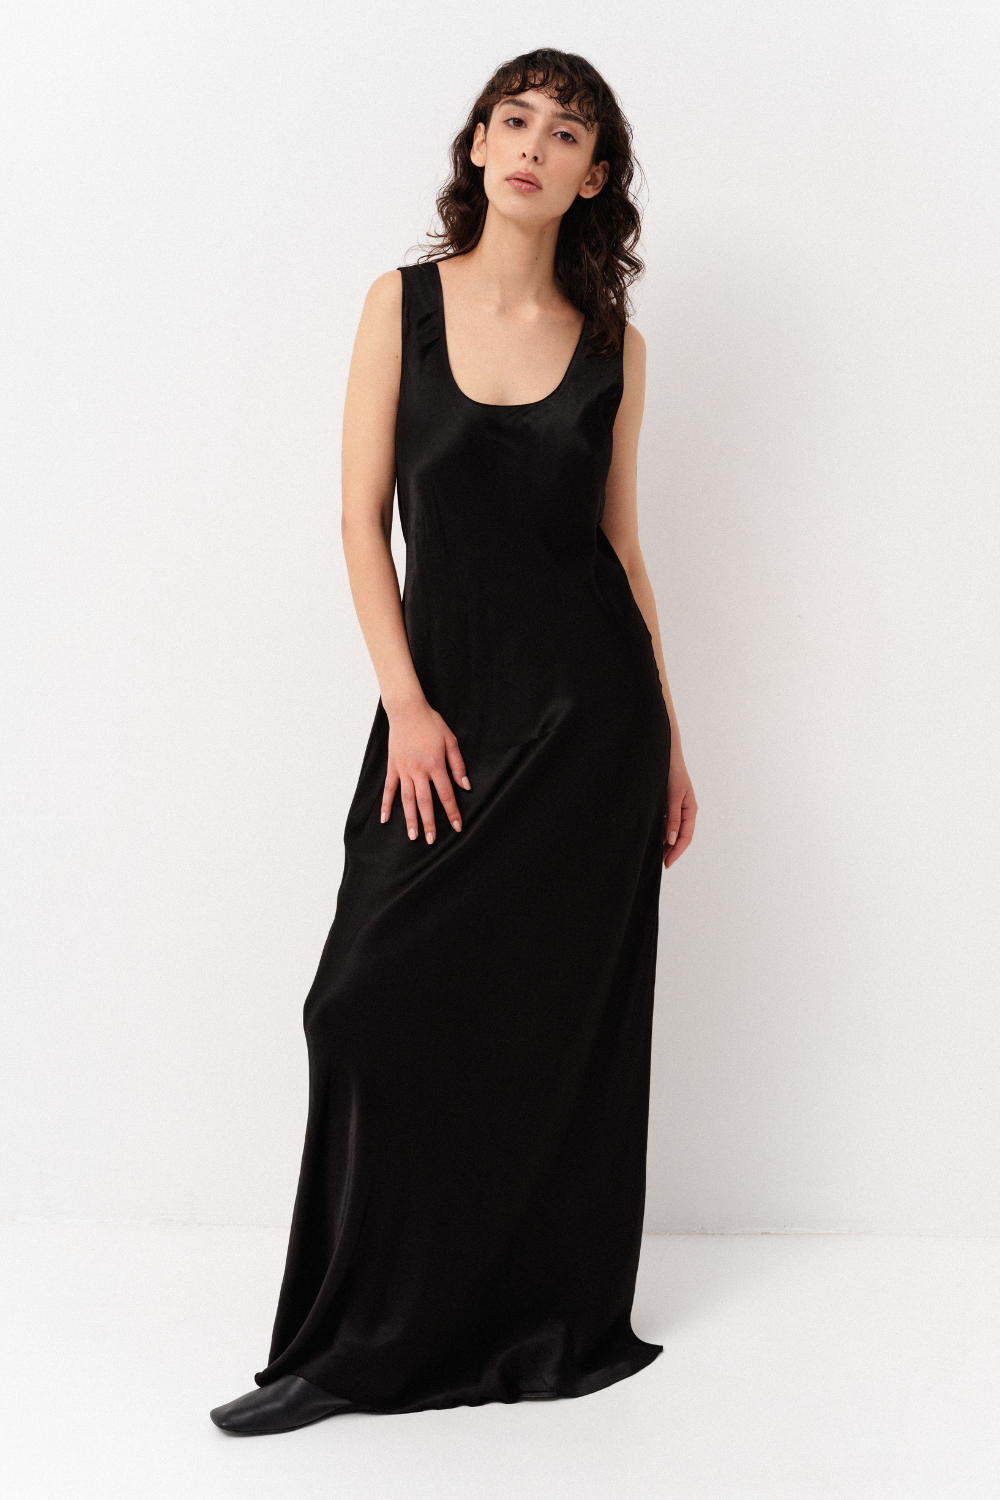 Šaty slip dress, černé, S-M, (Corsis), 21-003